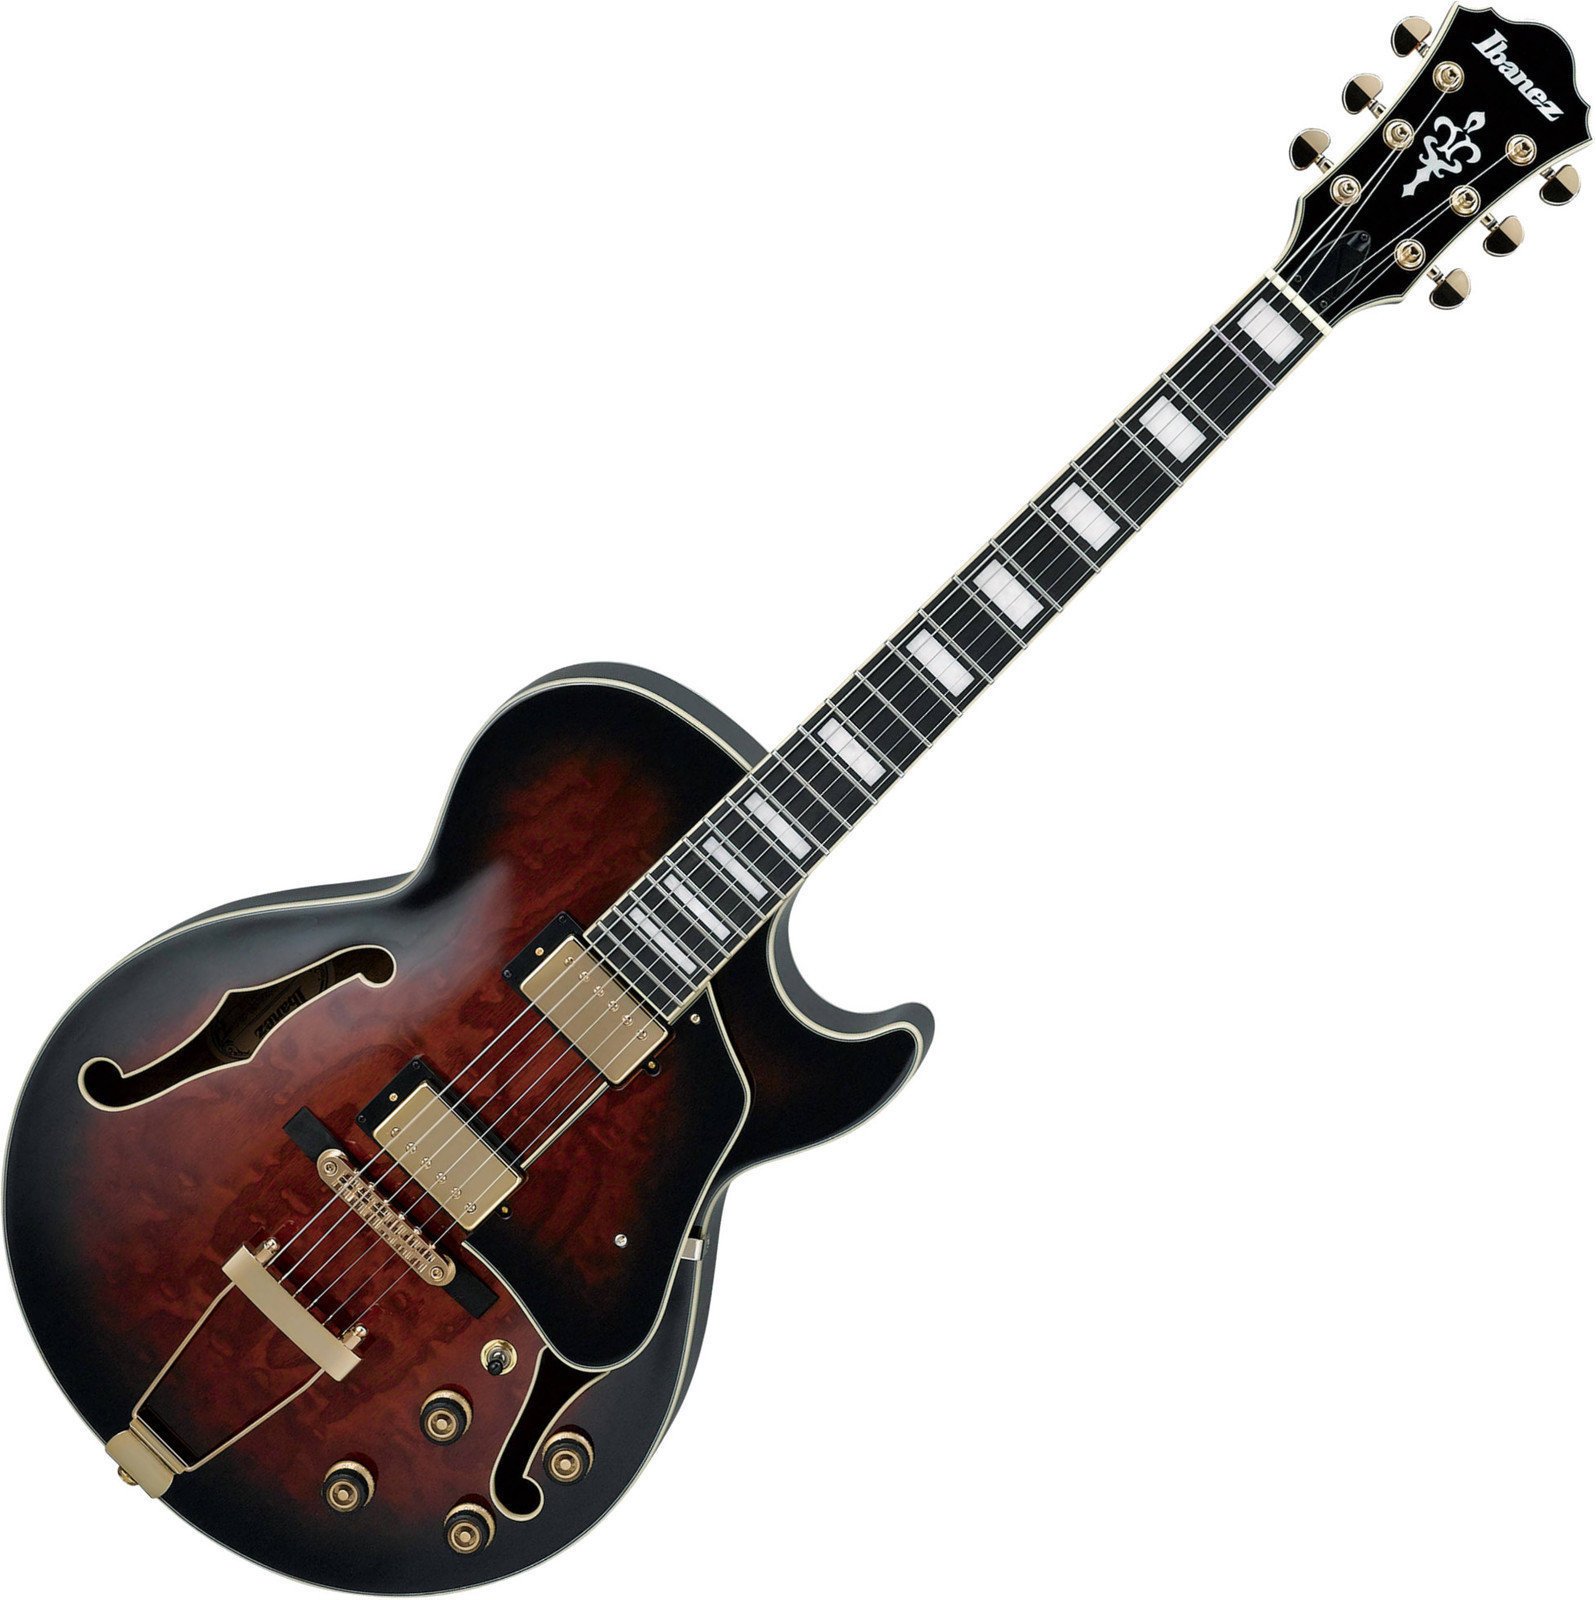 Semiakustická gitara Ibanez AG95QA-DBS Dark Brown Sunburst